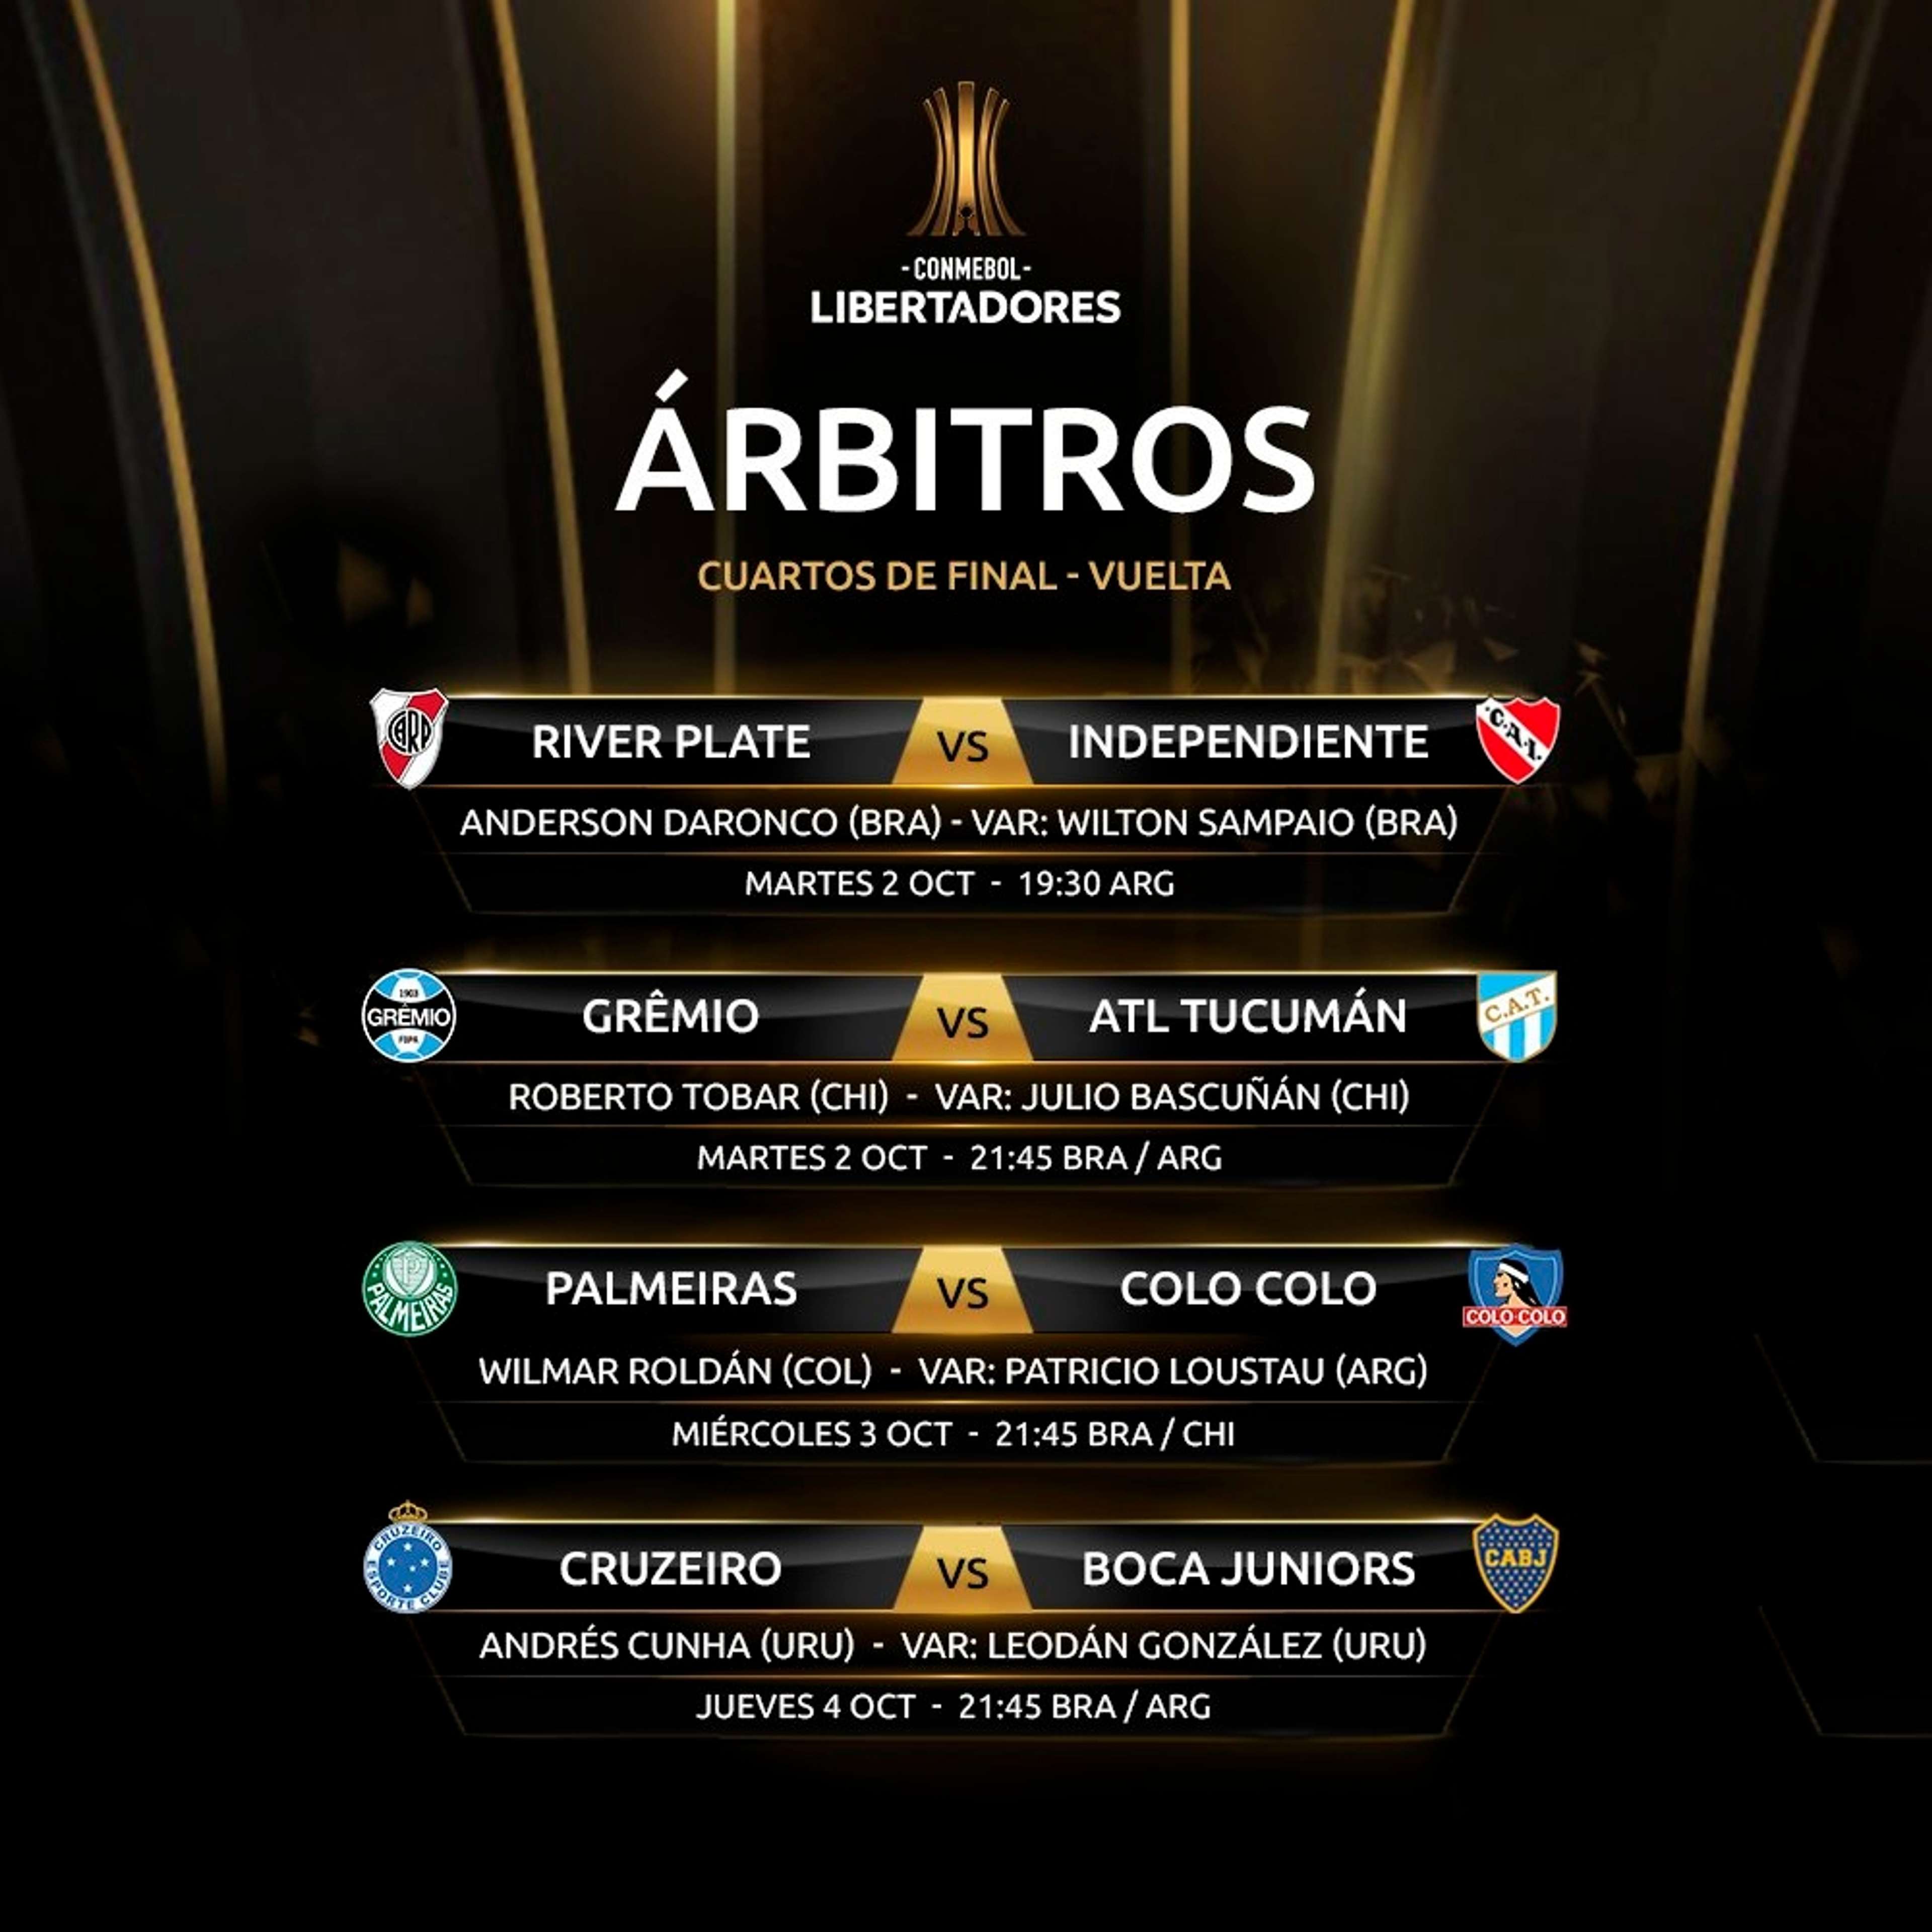 Copa Libertadores 2018 Cuartos de Final Vuelta Arbitros